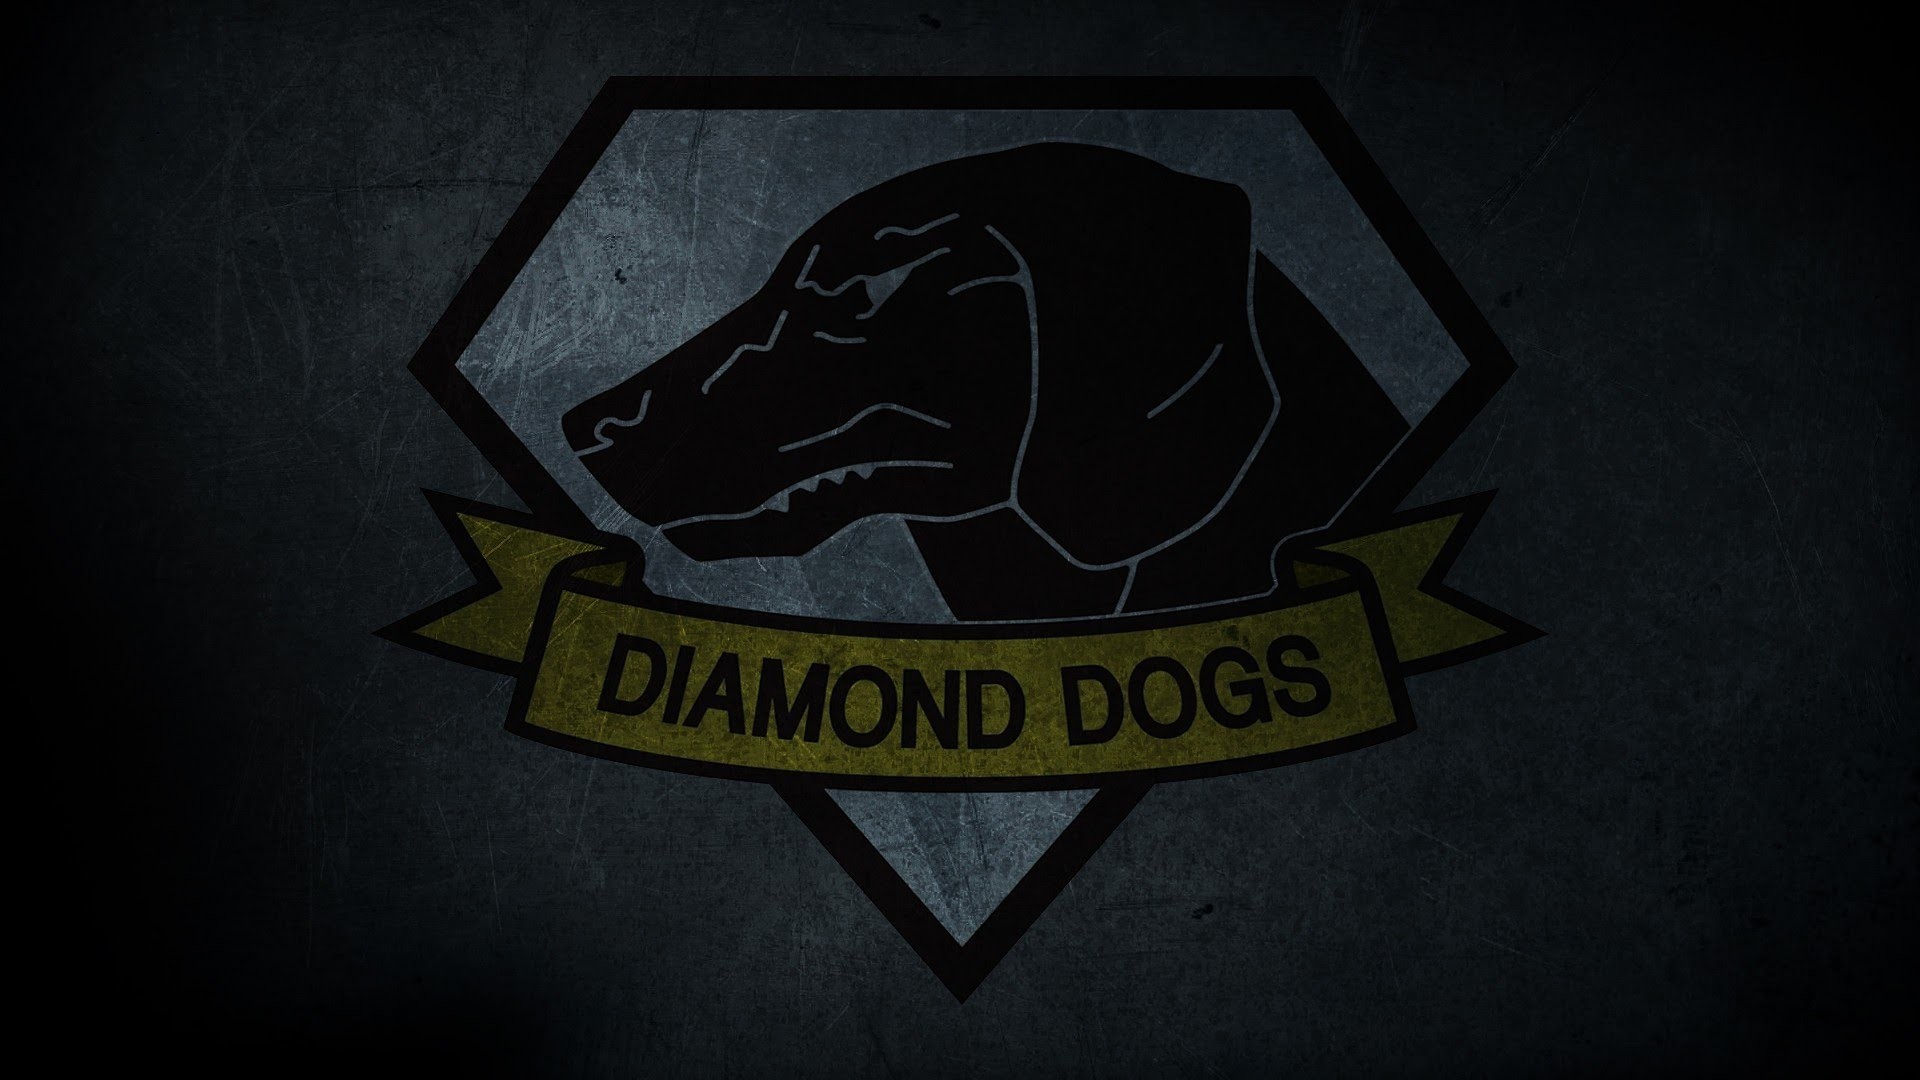 1920x1080 Image - Diamond Dogs background.jpg | Zenology Wiki | FANDOM powered by  Wikia